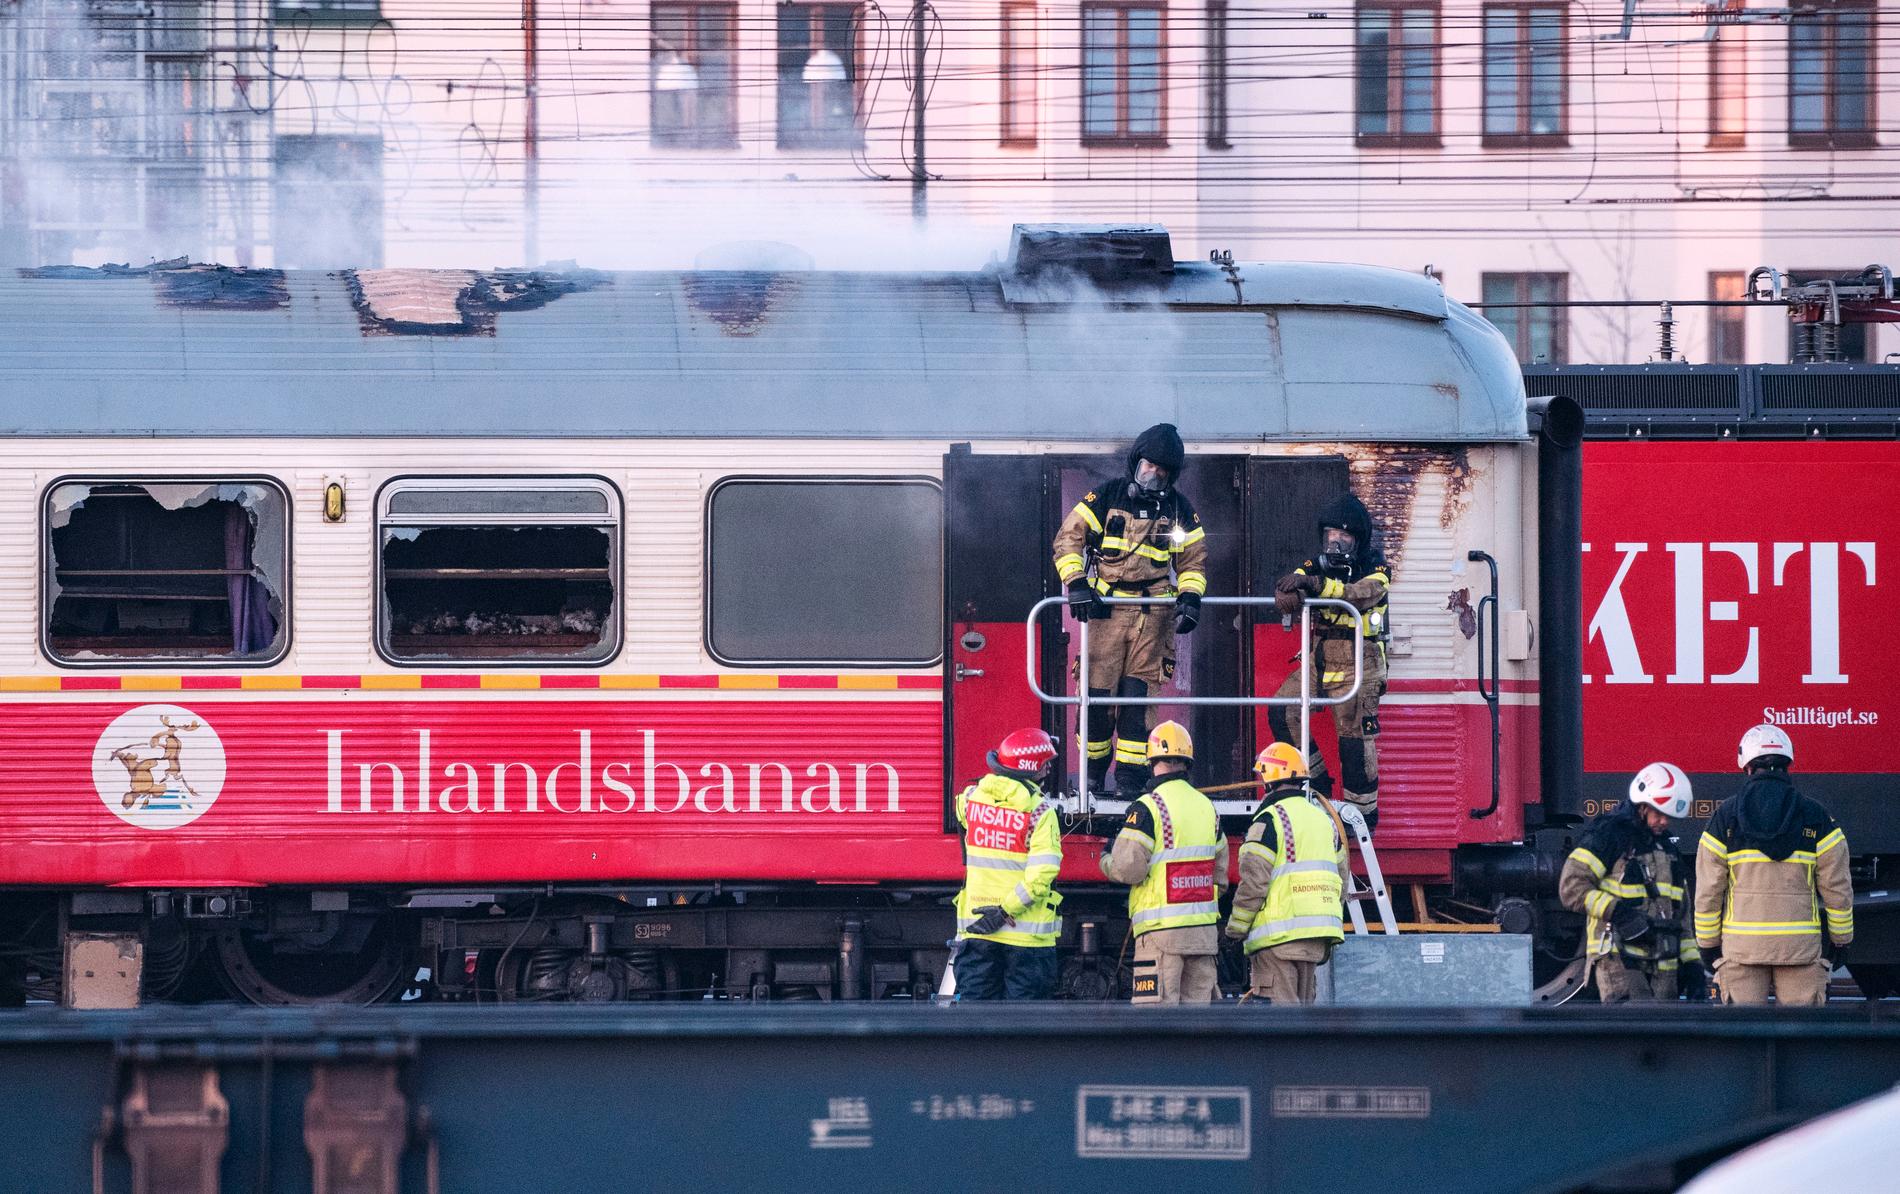 Tågtrafiken stoppades i samband med branden i tågvagnen.